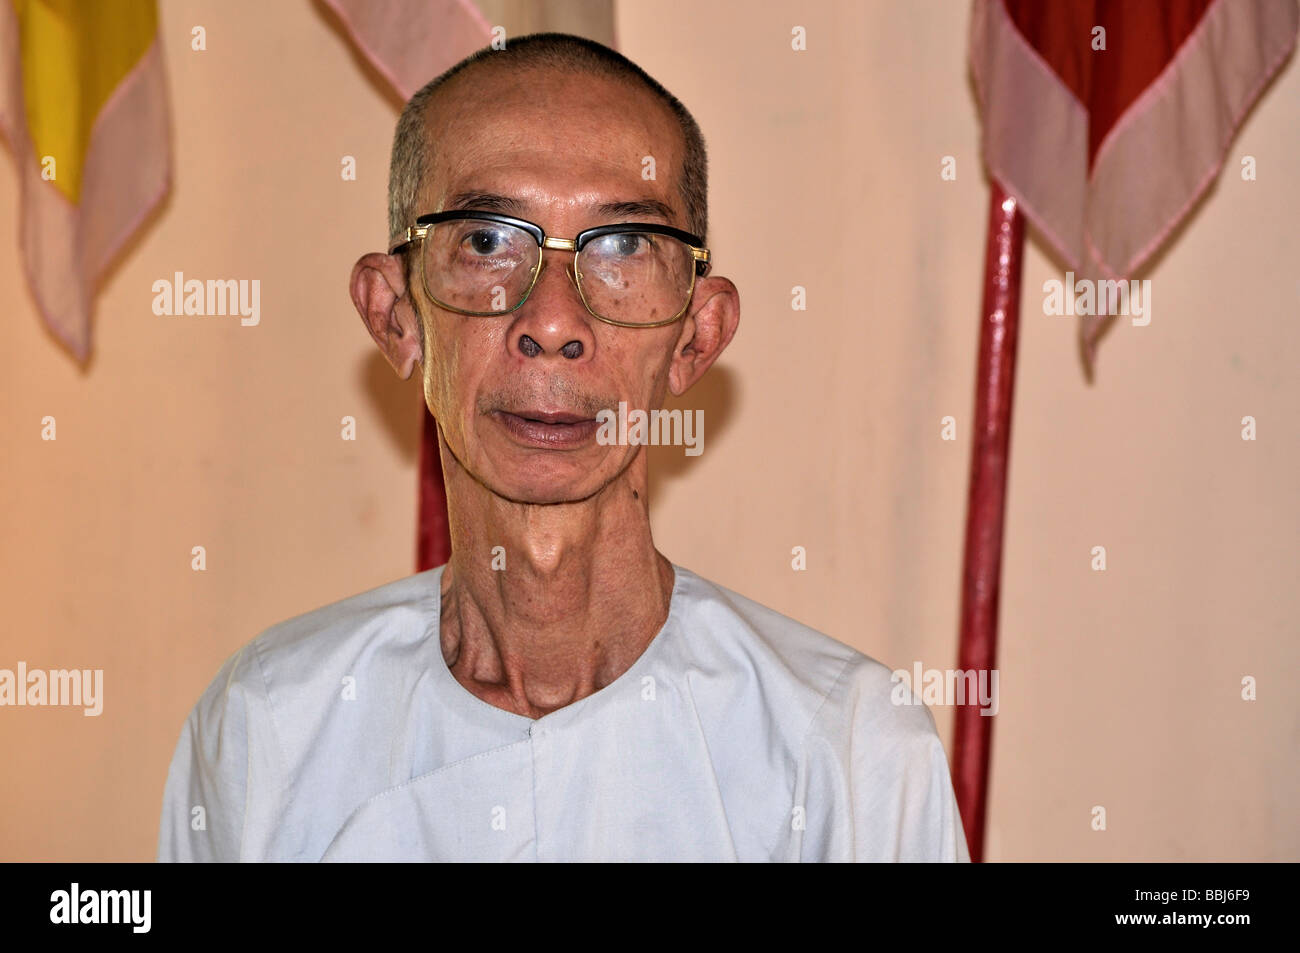 Buddhistischer Mönch mit großer Brille, Glatze, Phu Quoc, Vietnam, Asien Stockfoto